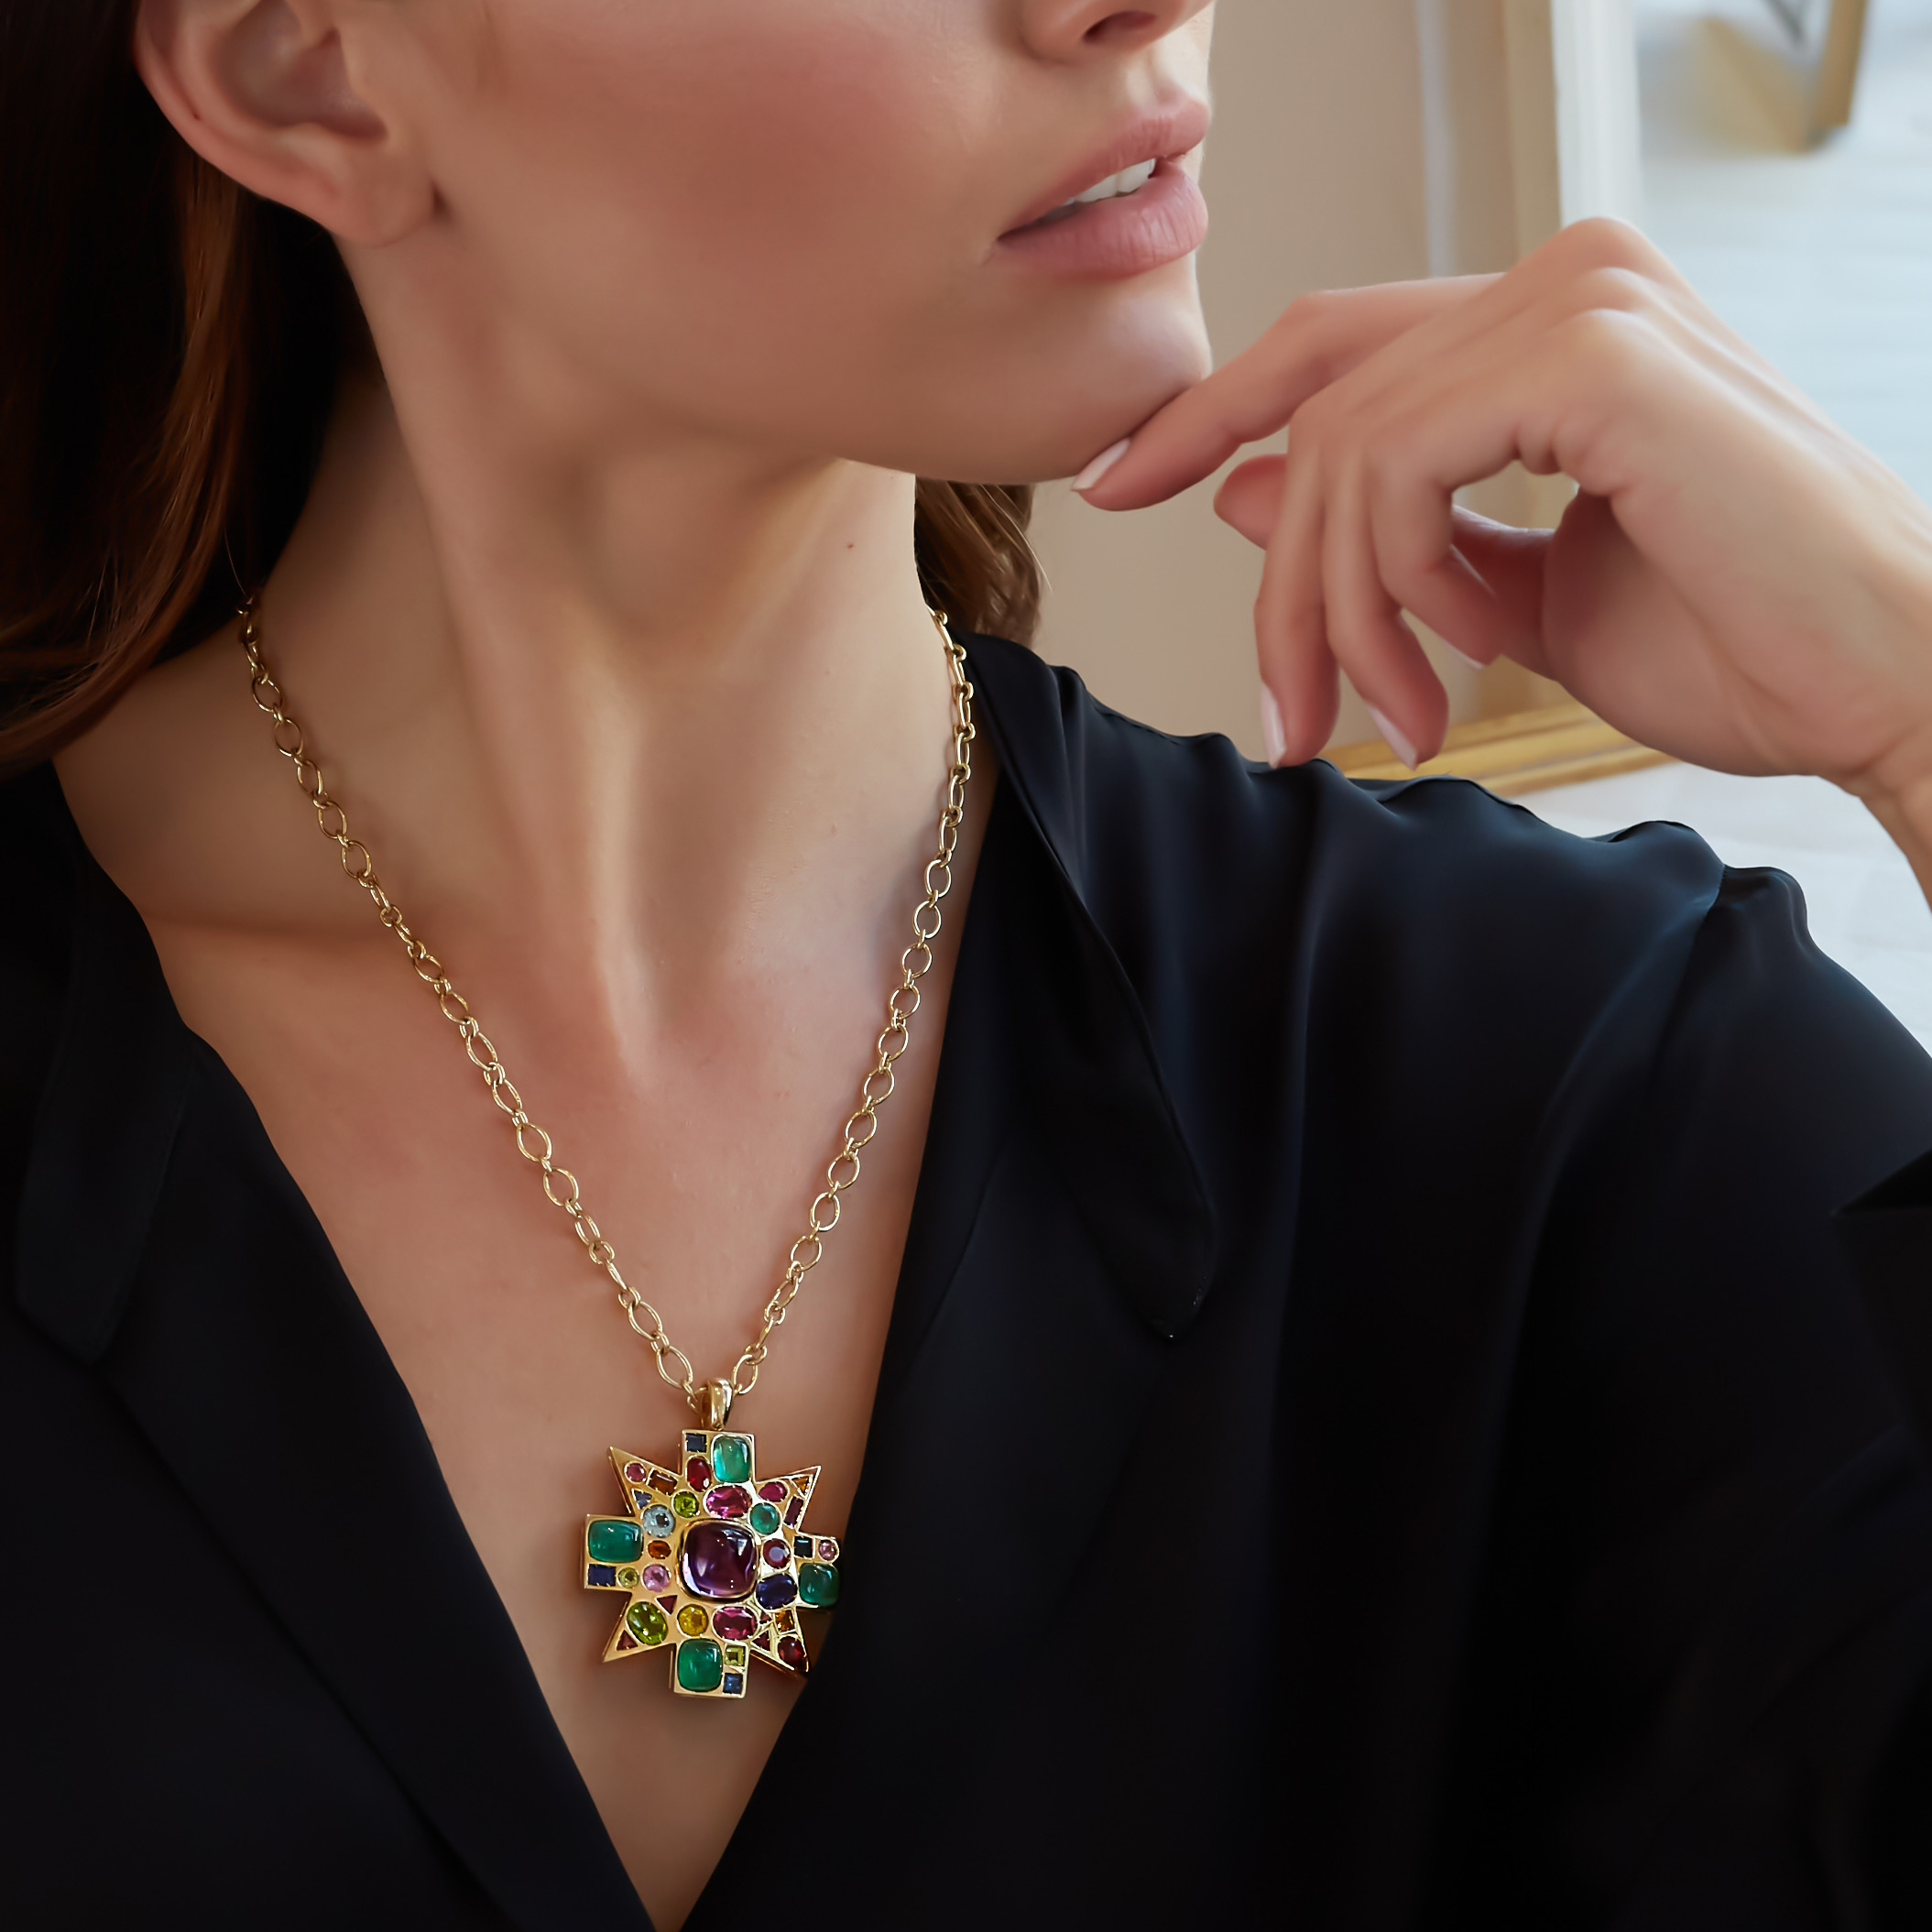 Baby Byzantine Pendant Necklace on Model